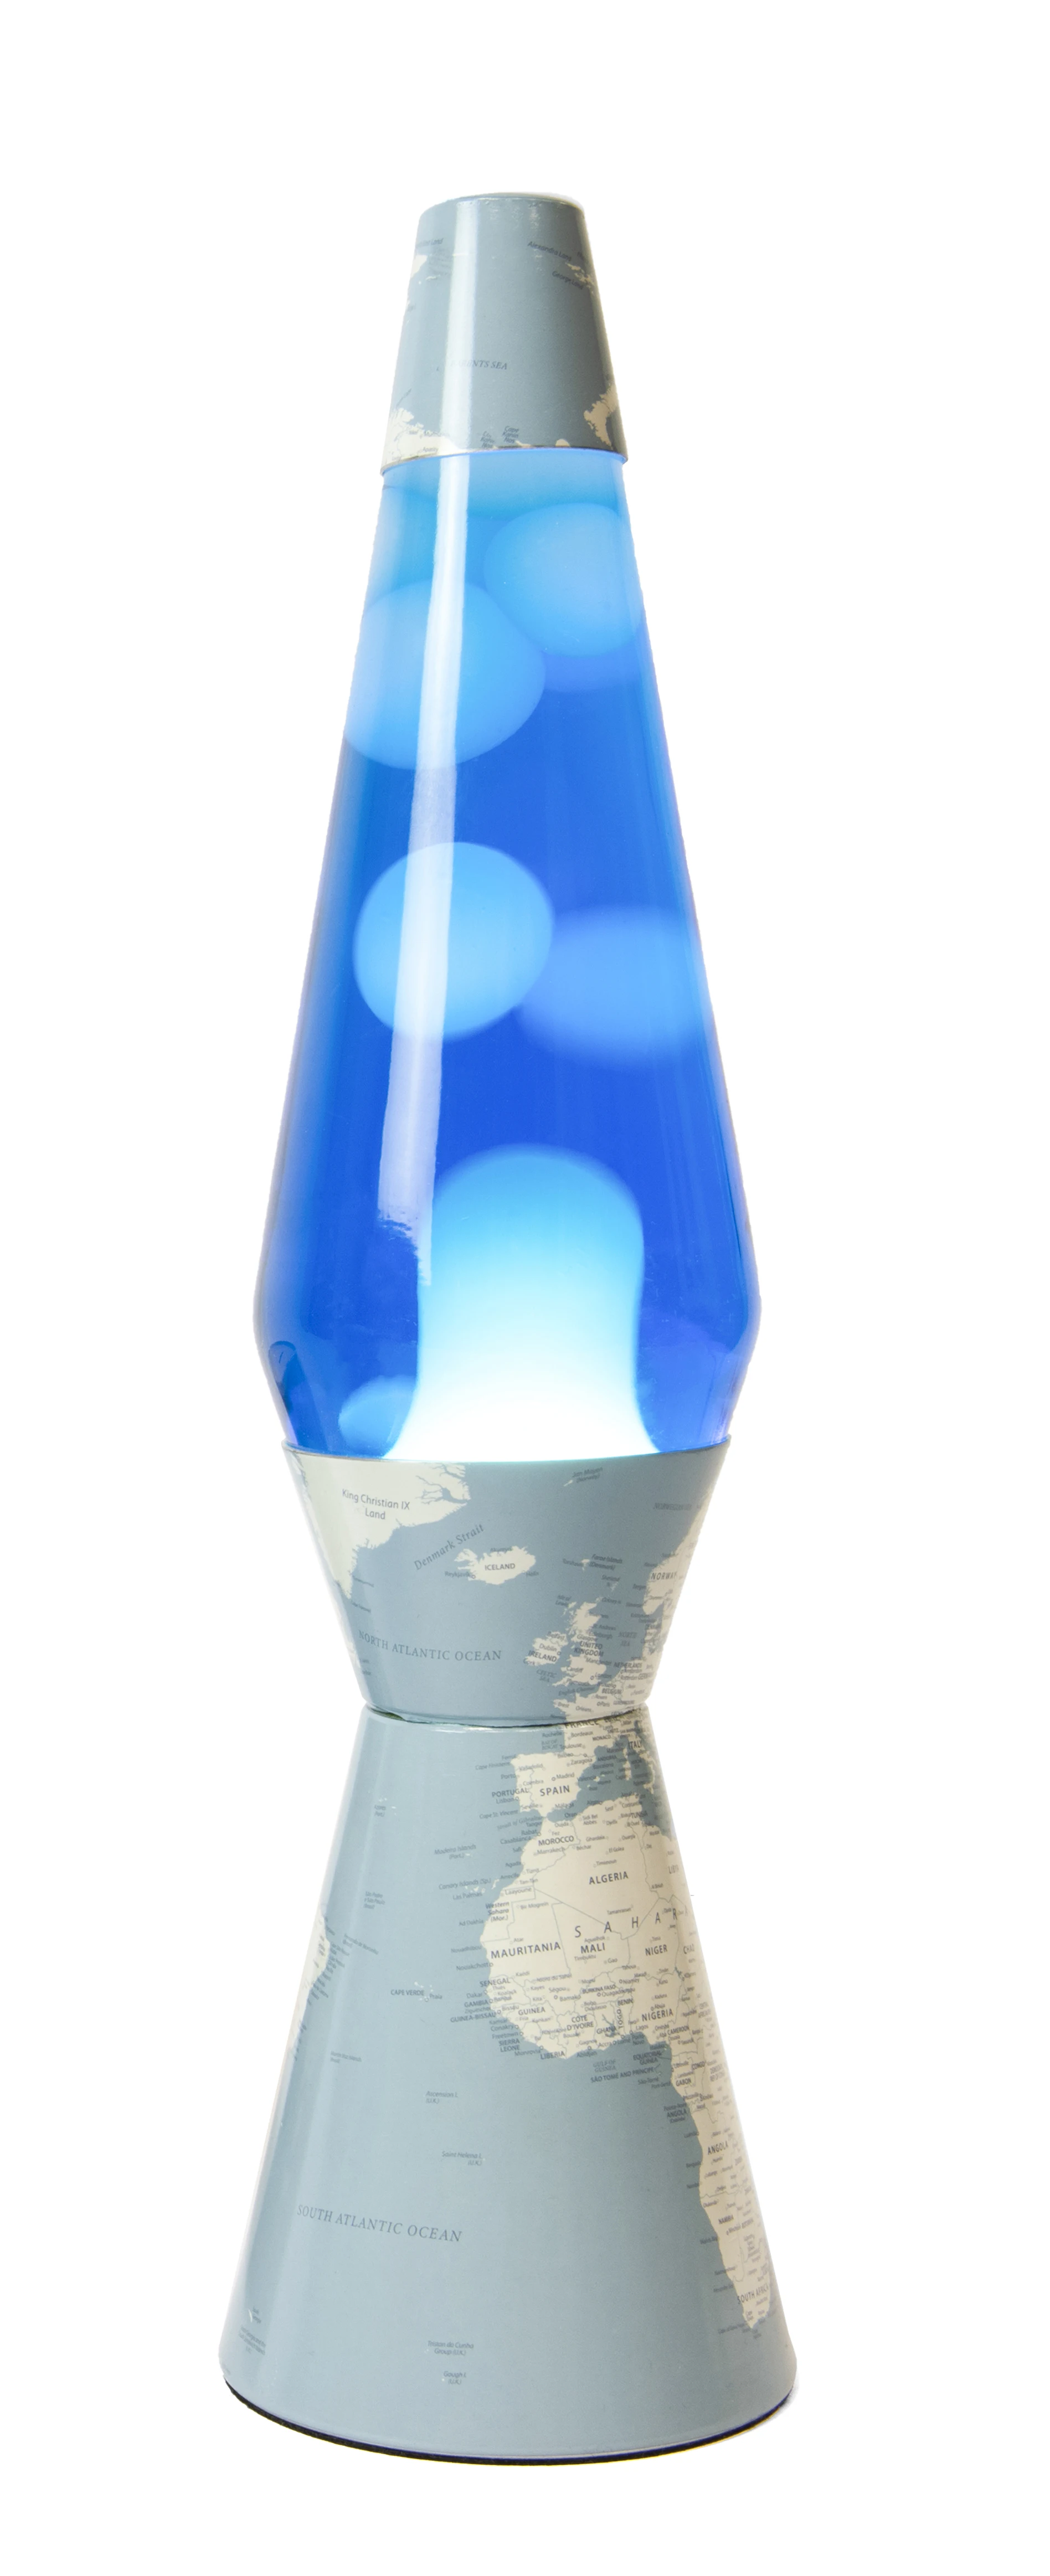 Galeriedruck for Sale mit Galaxy Aesthetic Lava Lampe von